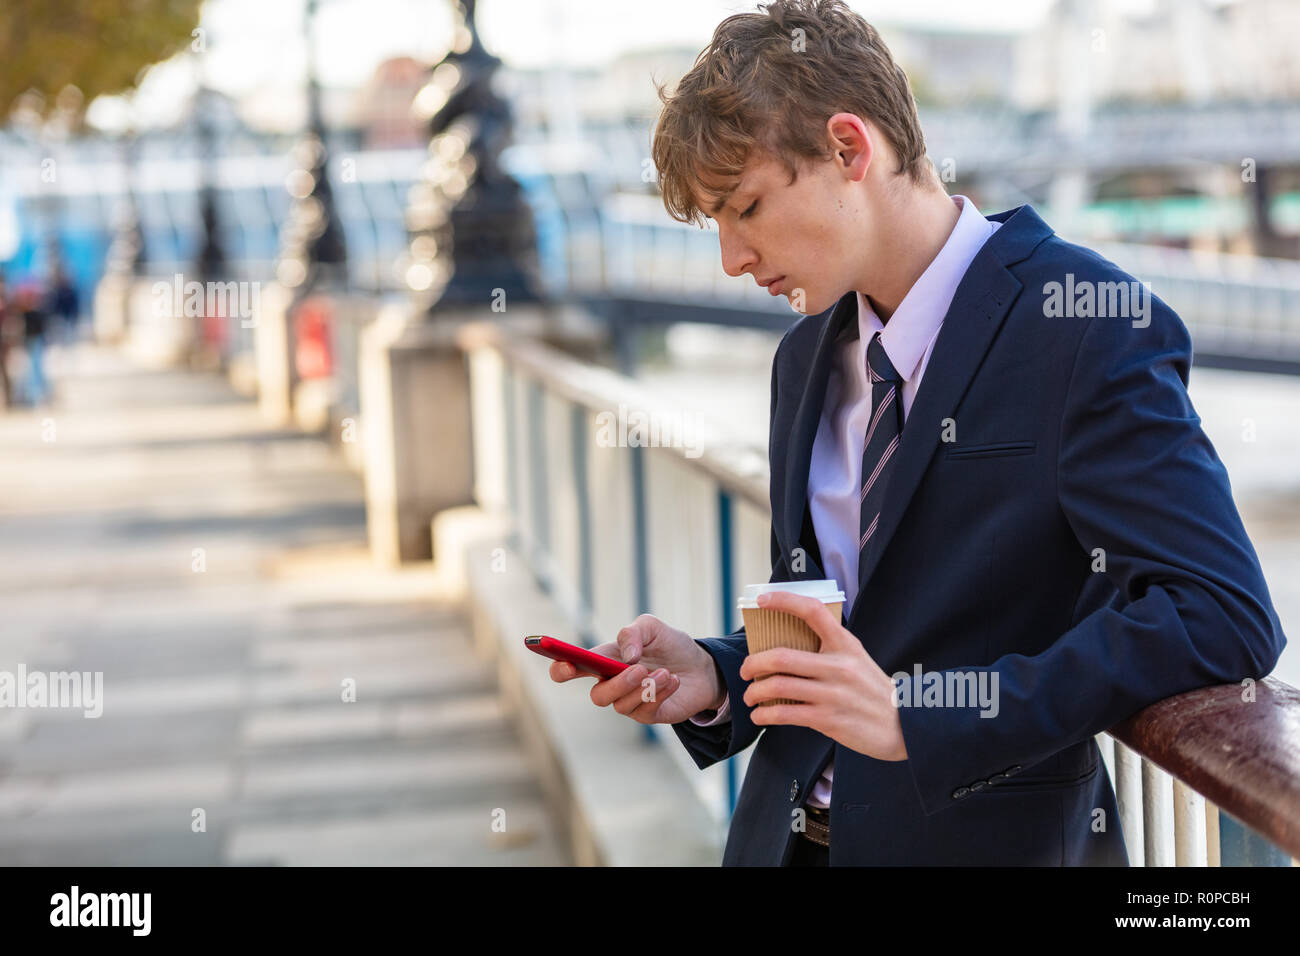 Männliche junge Erwachsene Teenager tragen Anzug und Krawatte mit Smart Handy für socail Medien und trinken Kaffee zum Mitnehmen Stockfoto